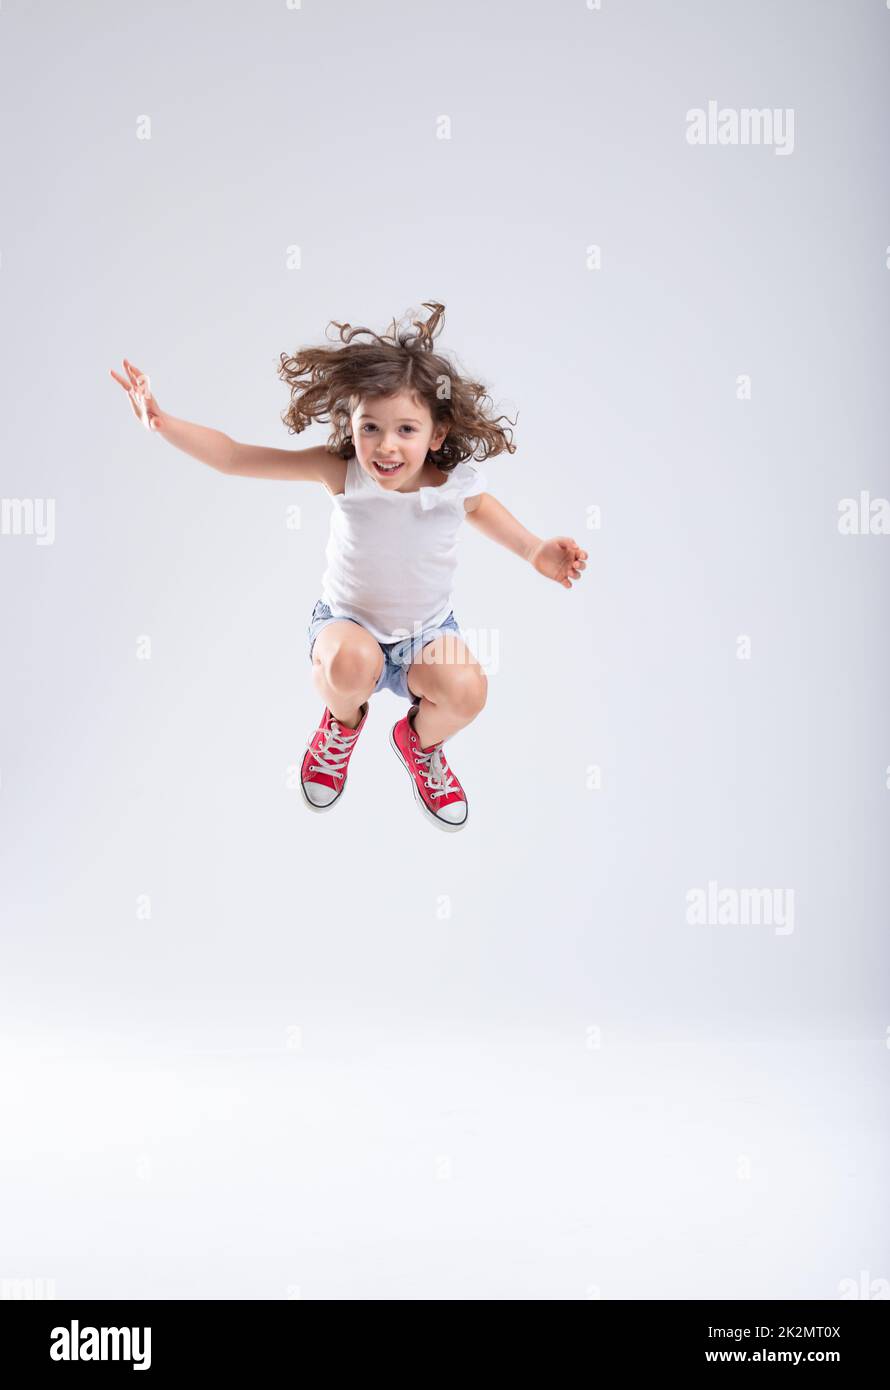 Chica energética saltando en el aire Foto de stock